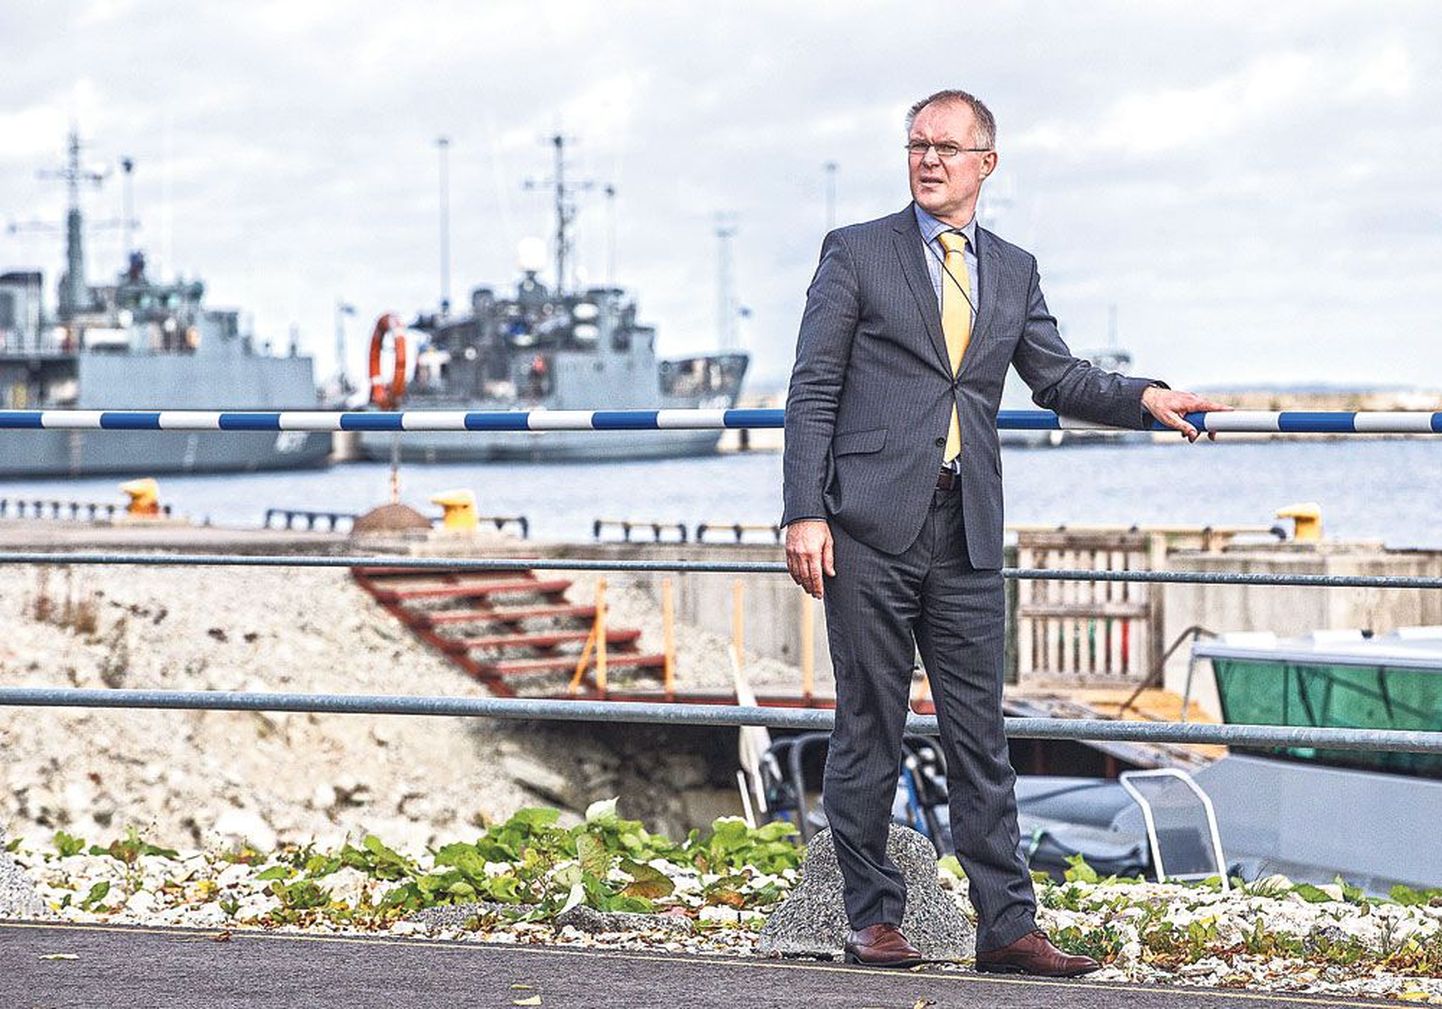 Министр обороны Ханнес Хансо в Минной гавани в Таллинне. Оснащение трех противоминных кораблей по самым современным технологиям он считает одним из своих приоритетов.